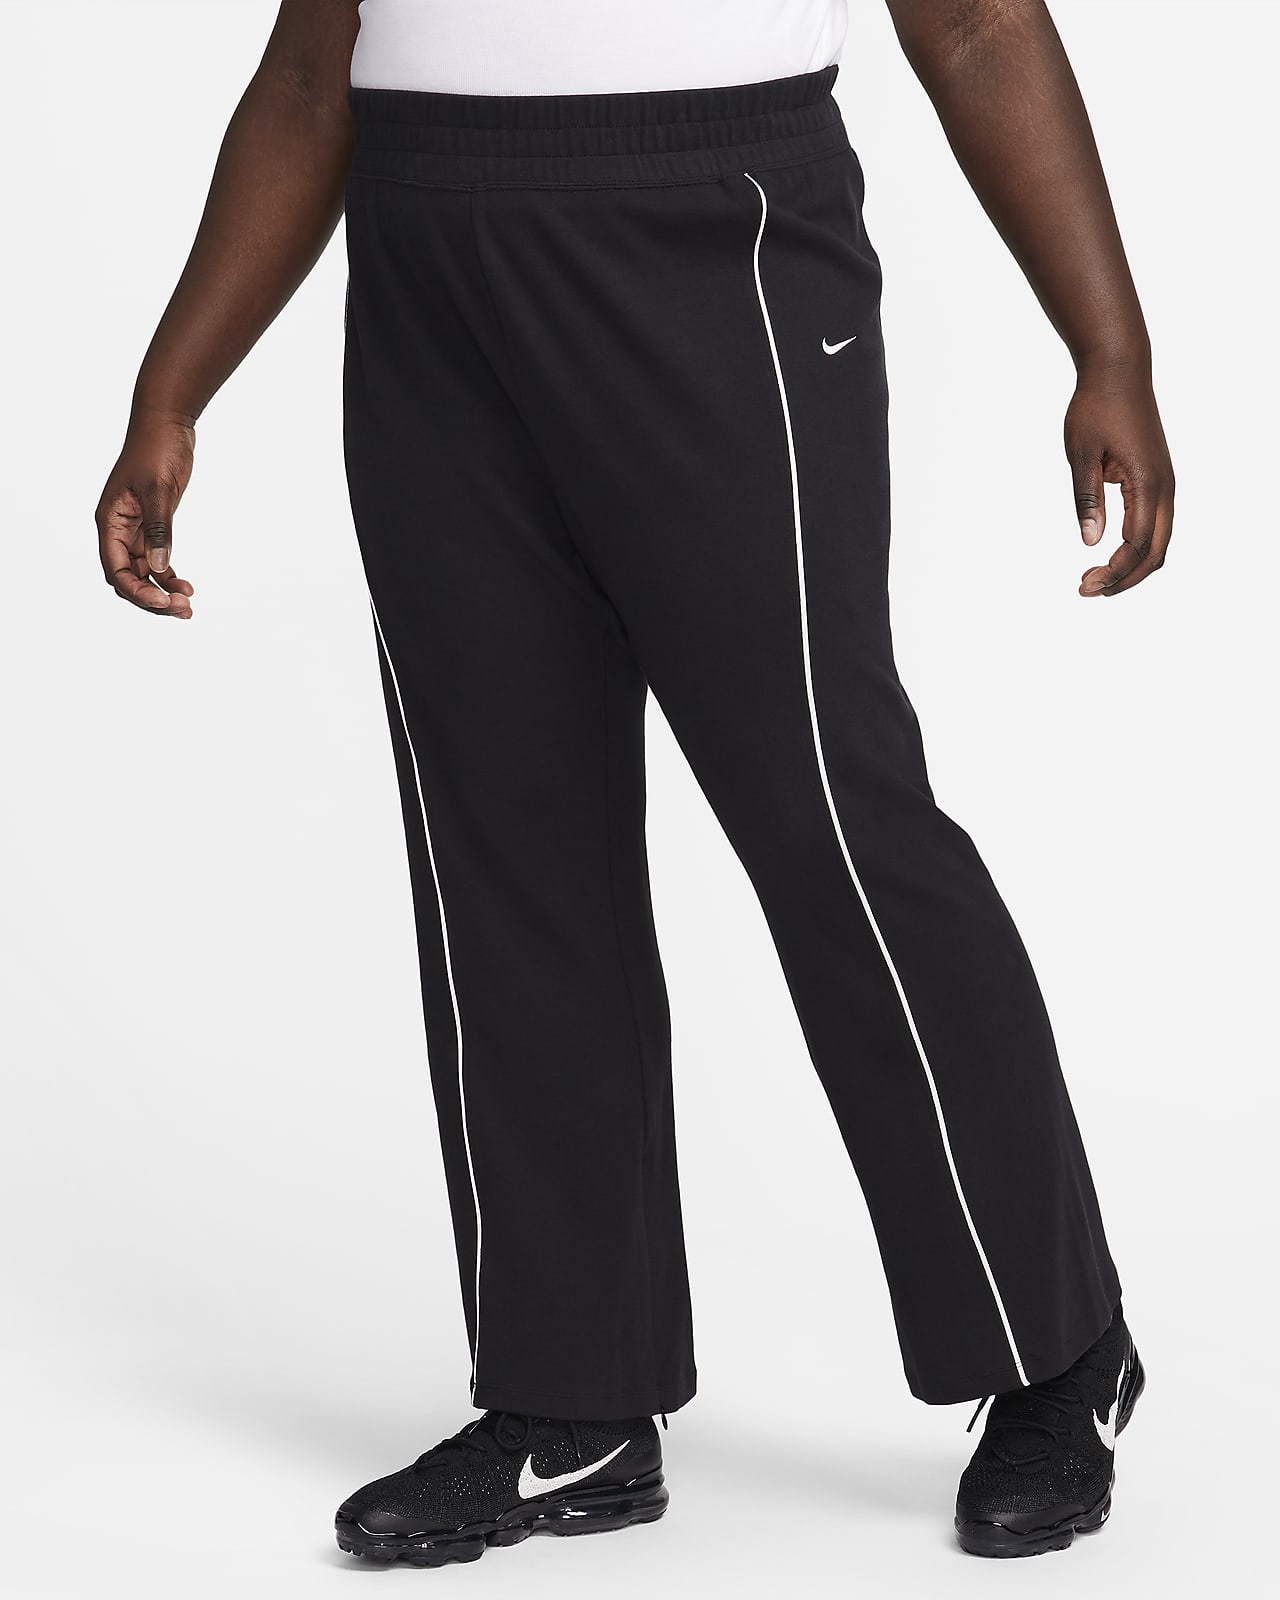 Nike Sportswear Collection Women's Slit-Hem Trousers (Plus Size). Nike LU